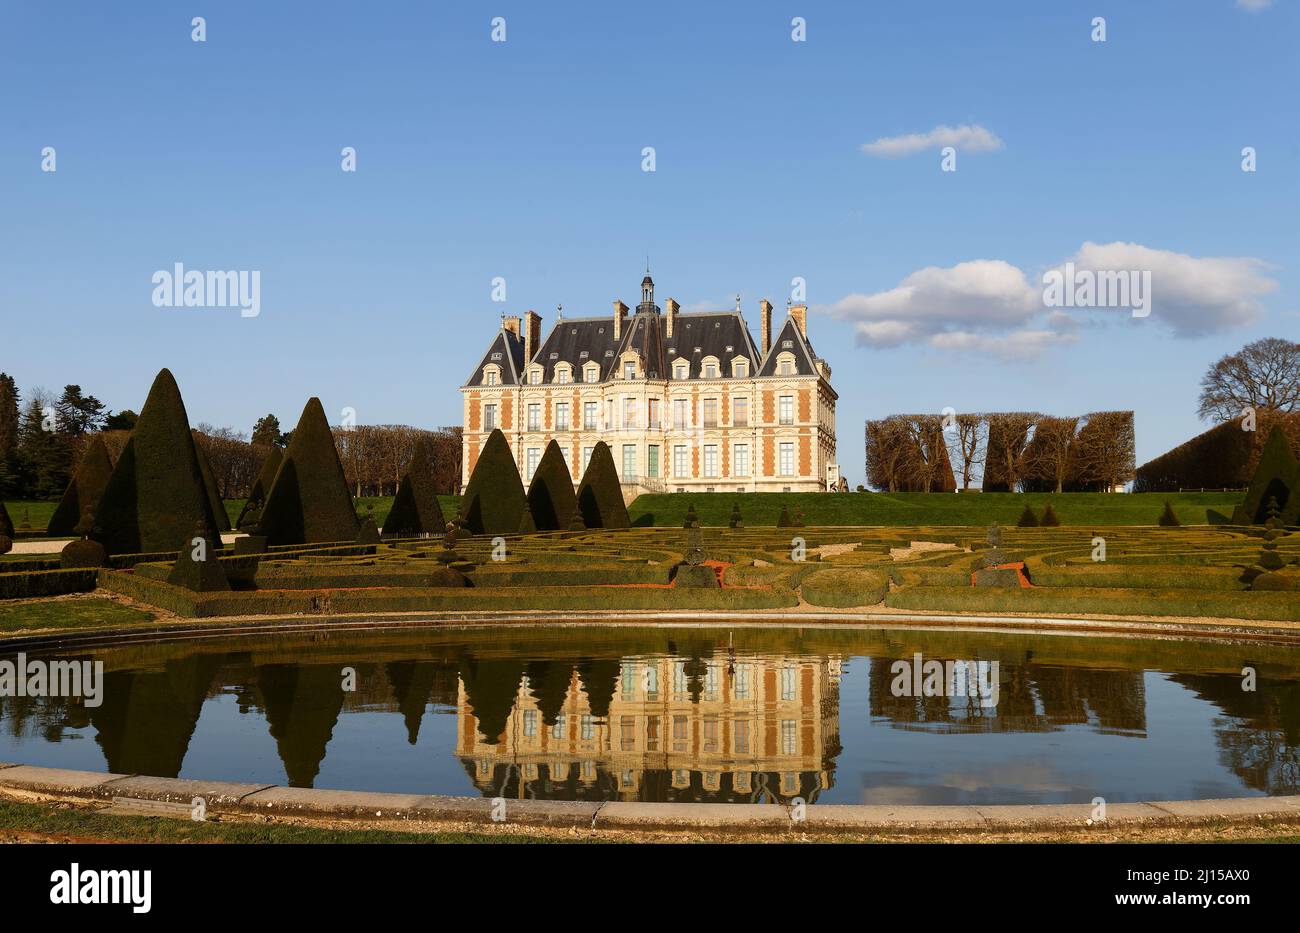 Sceaux castle - grand country house in Sceaux, Hauts-de-Seine, not far from Paris, France. Stock Photo